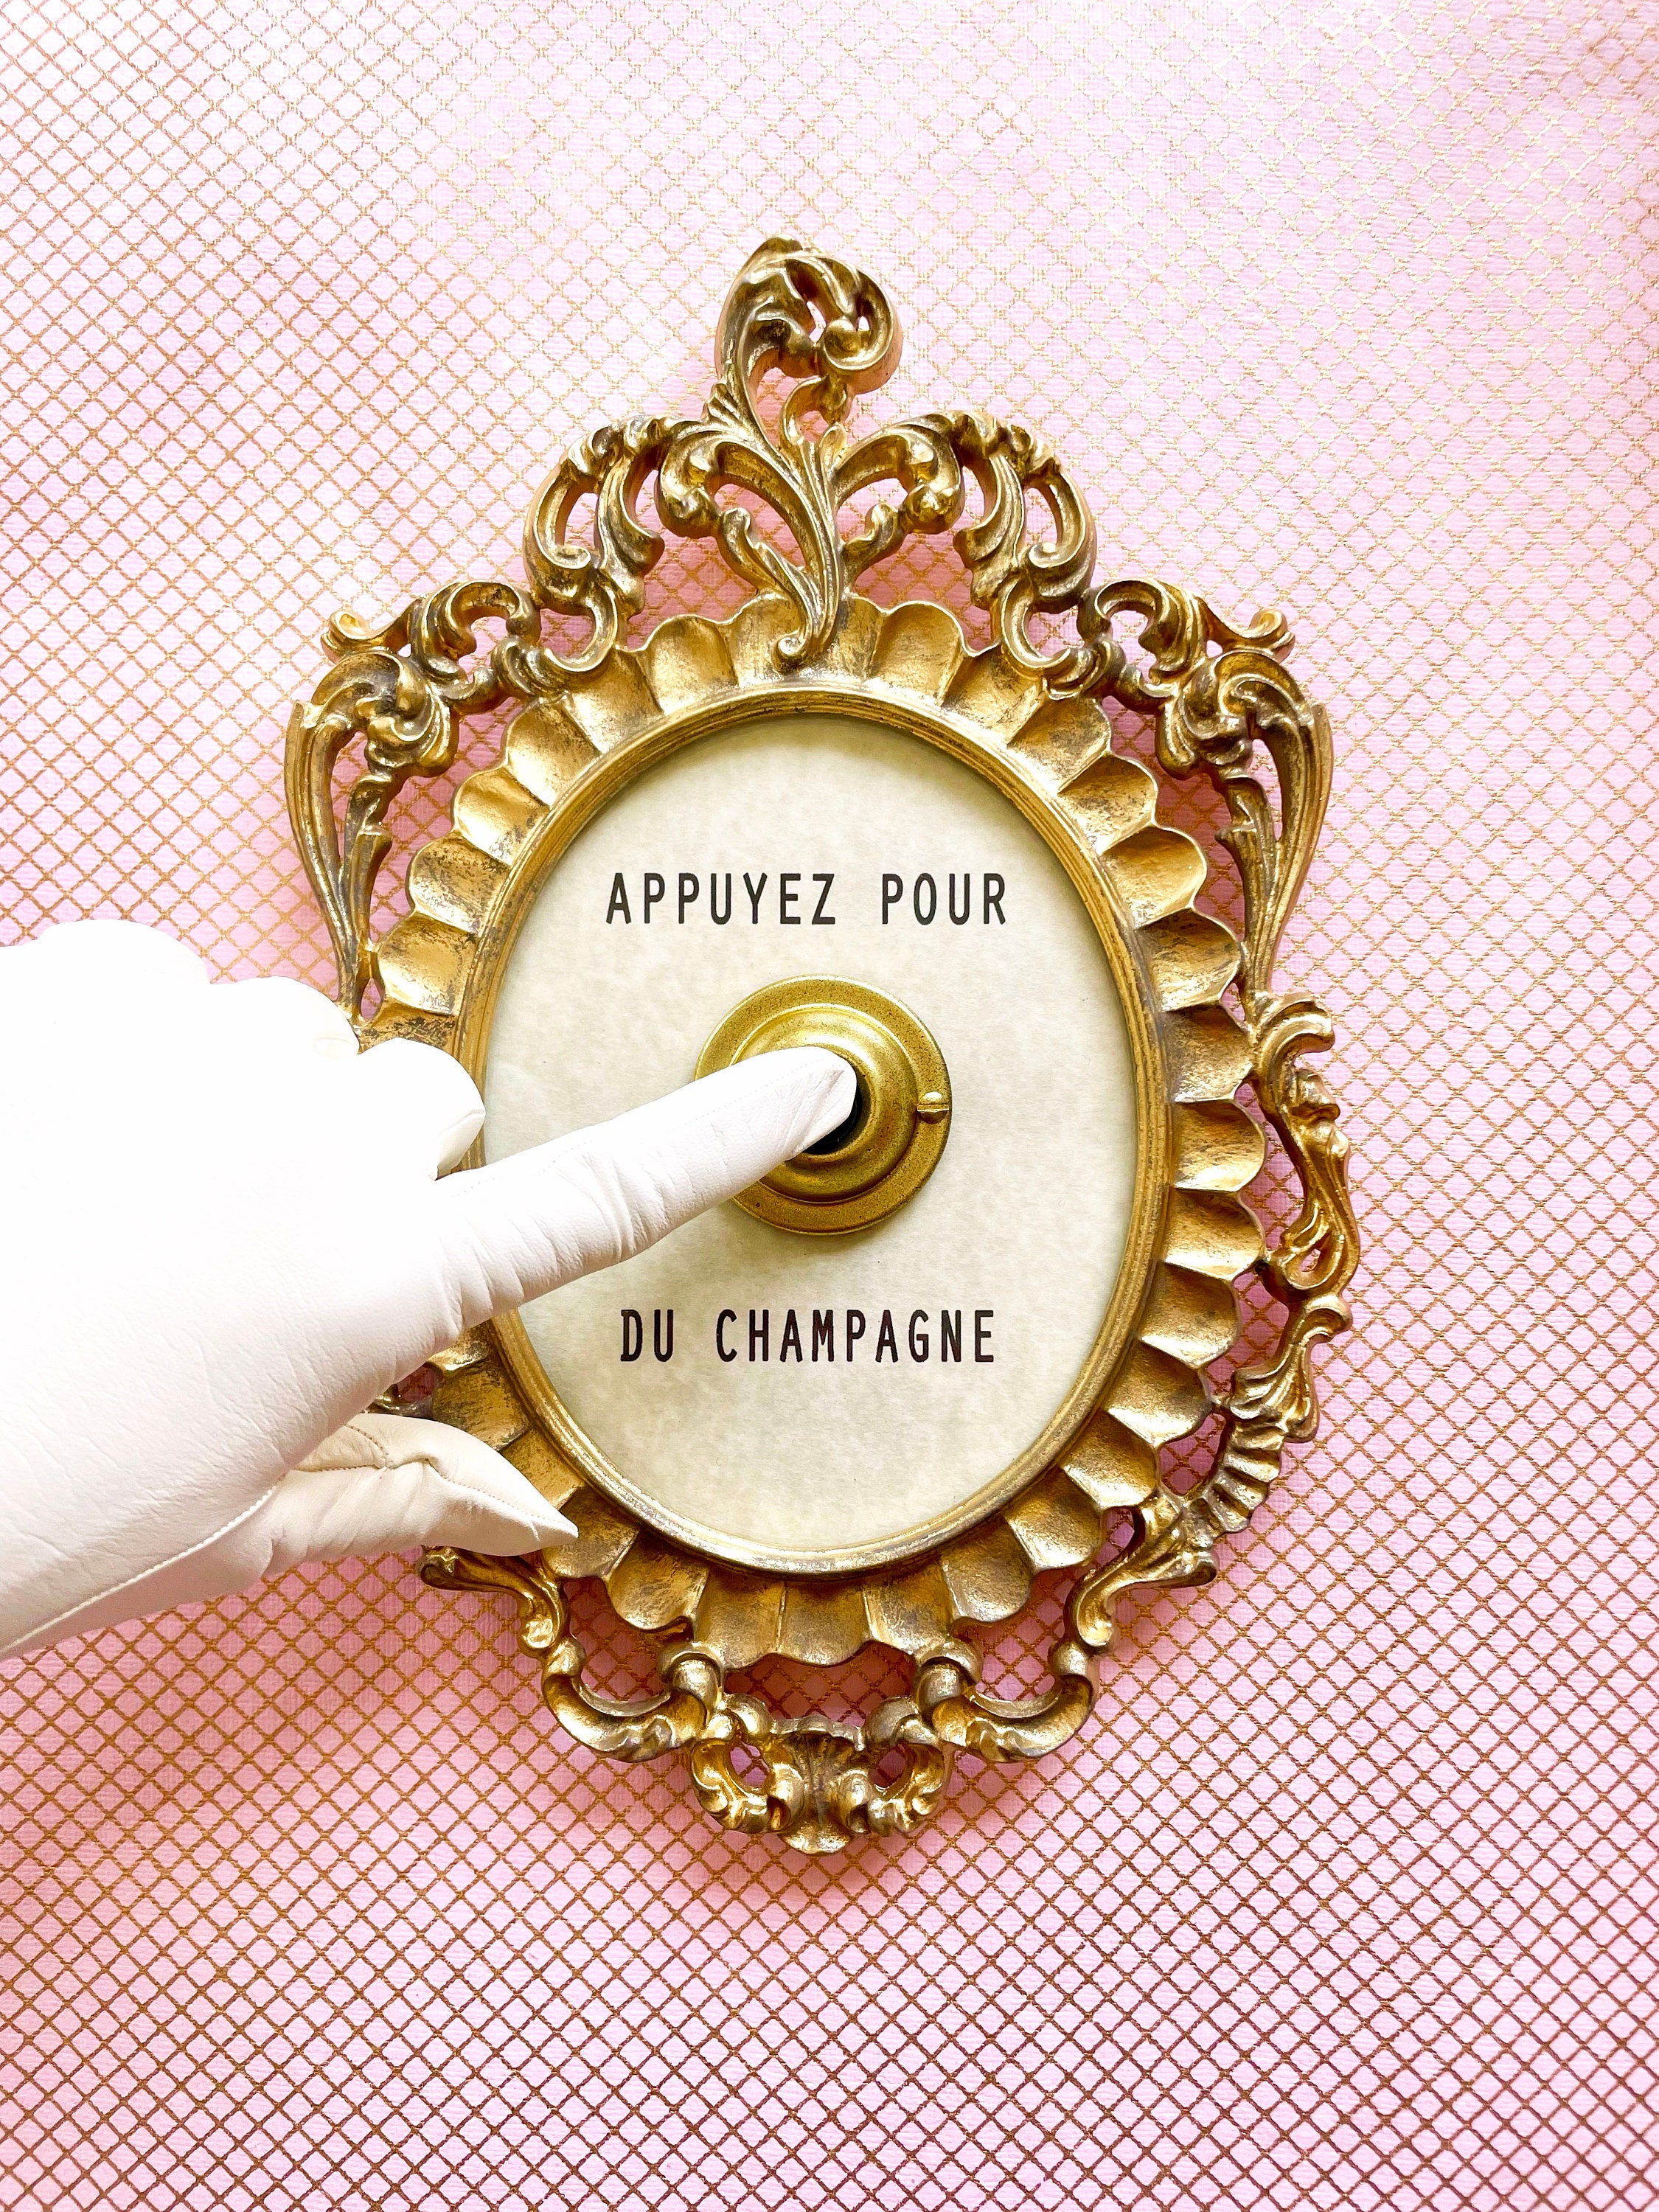 Press For Champagne Tumbler – Alicia DiMichele Boutique